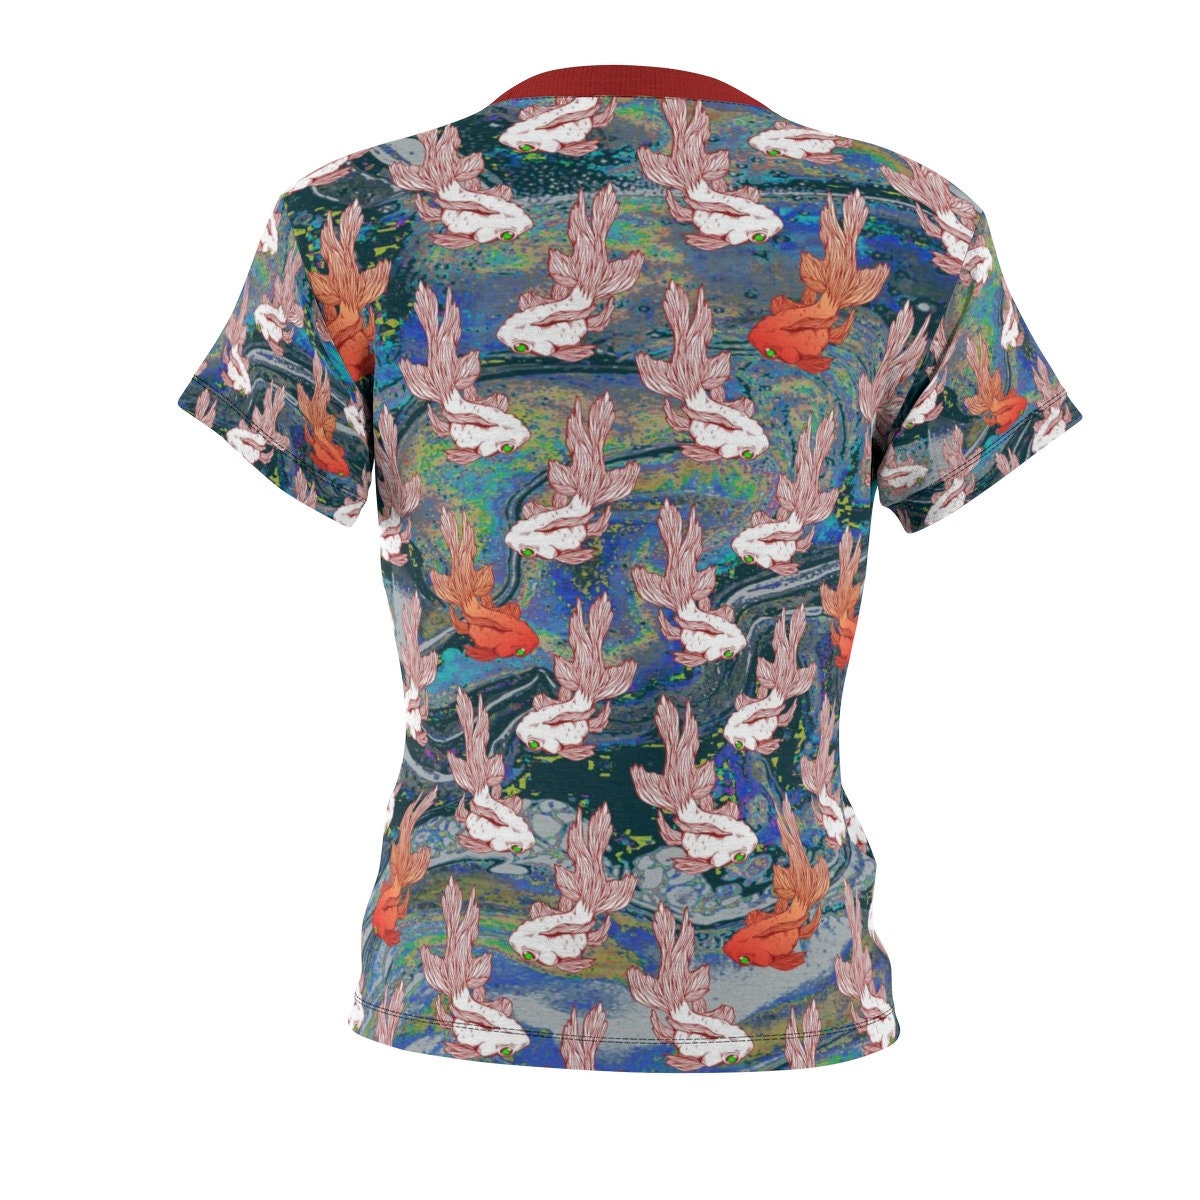 Perfect Gift / Koi / Women's / Tee T-Shirt Shirt / Goldfish / Fish / Valentine's gift / Pretty / Colors / Art / New / Sexy - Chloe Lambertin